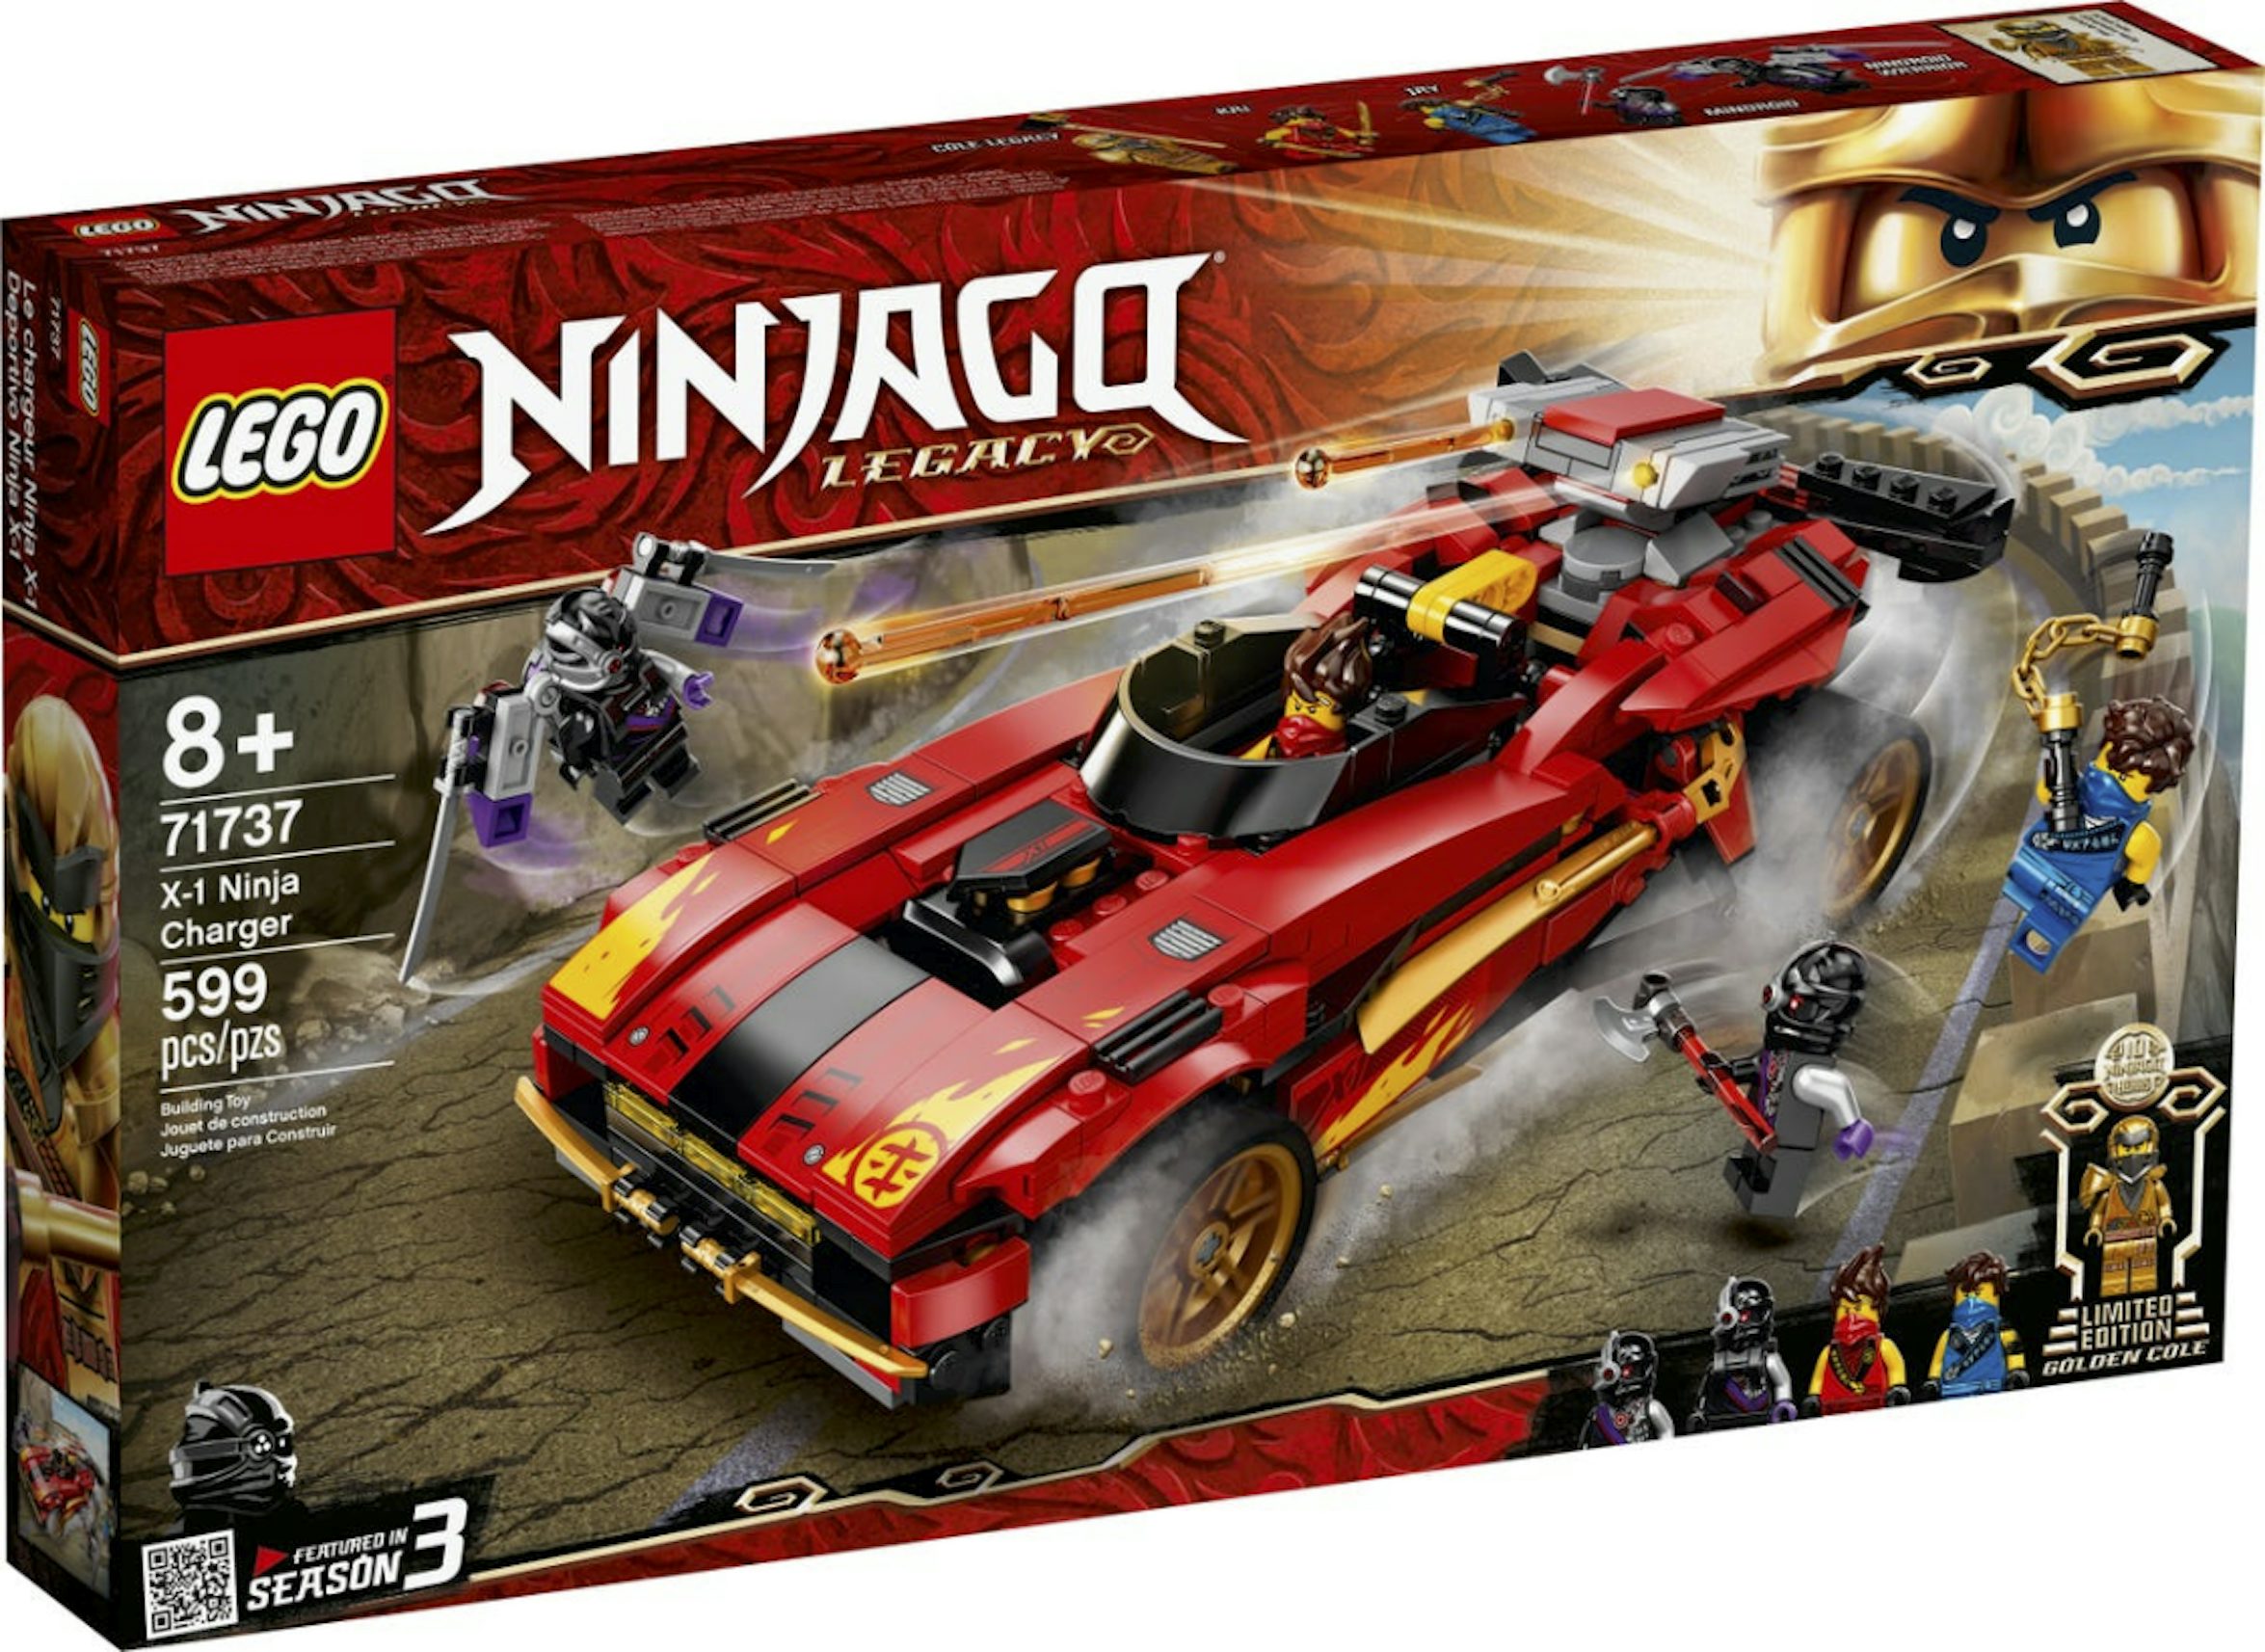 LEGO Ninjago X-1 Ninja Charger Set 71737 - US